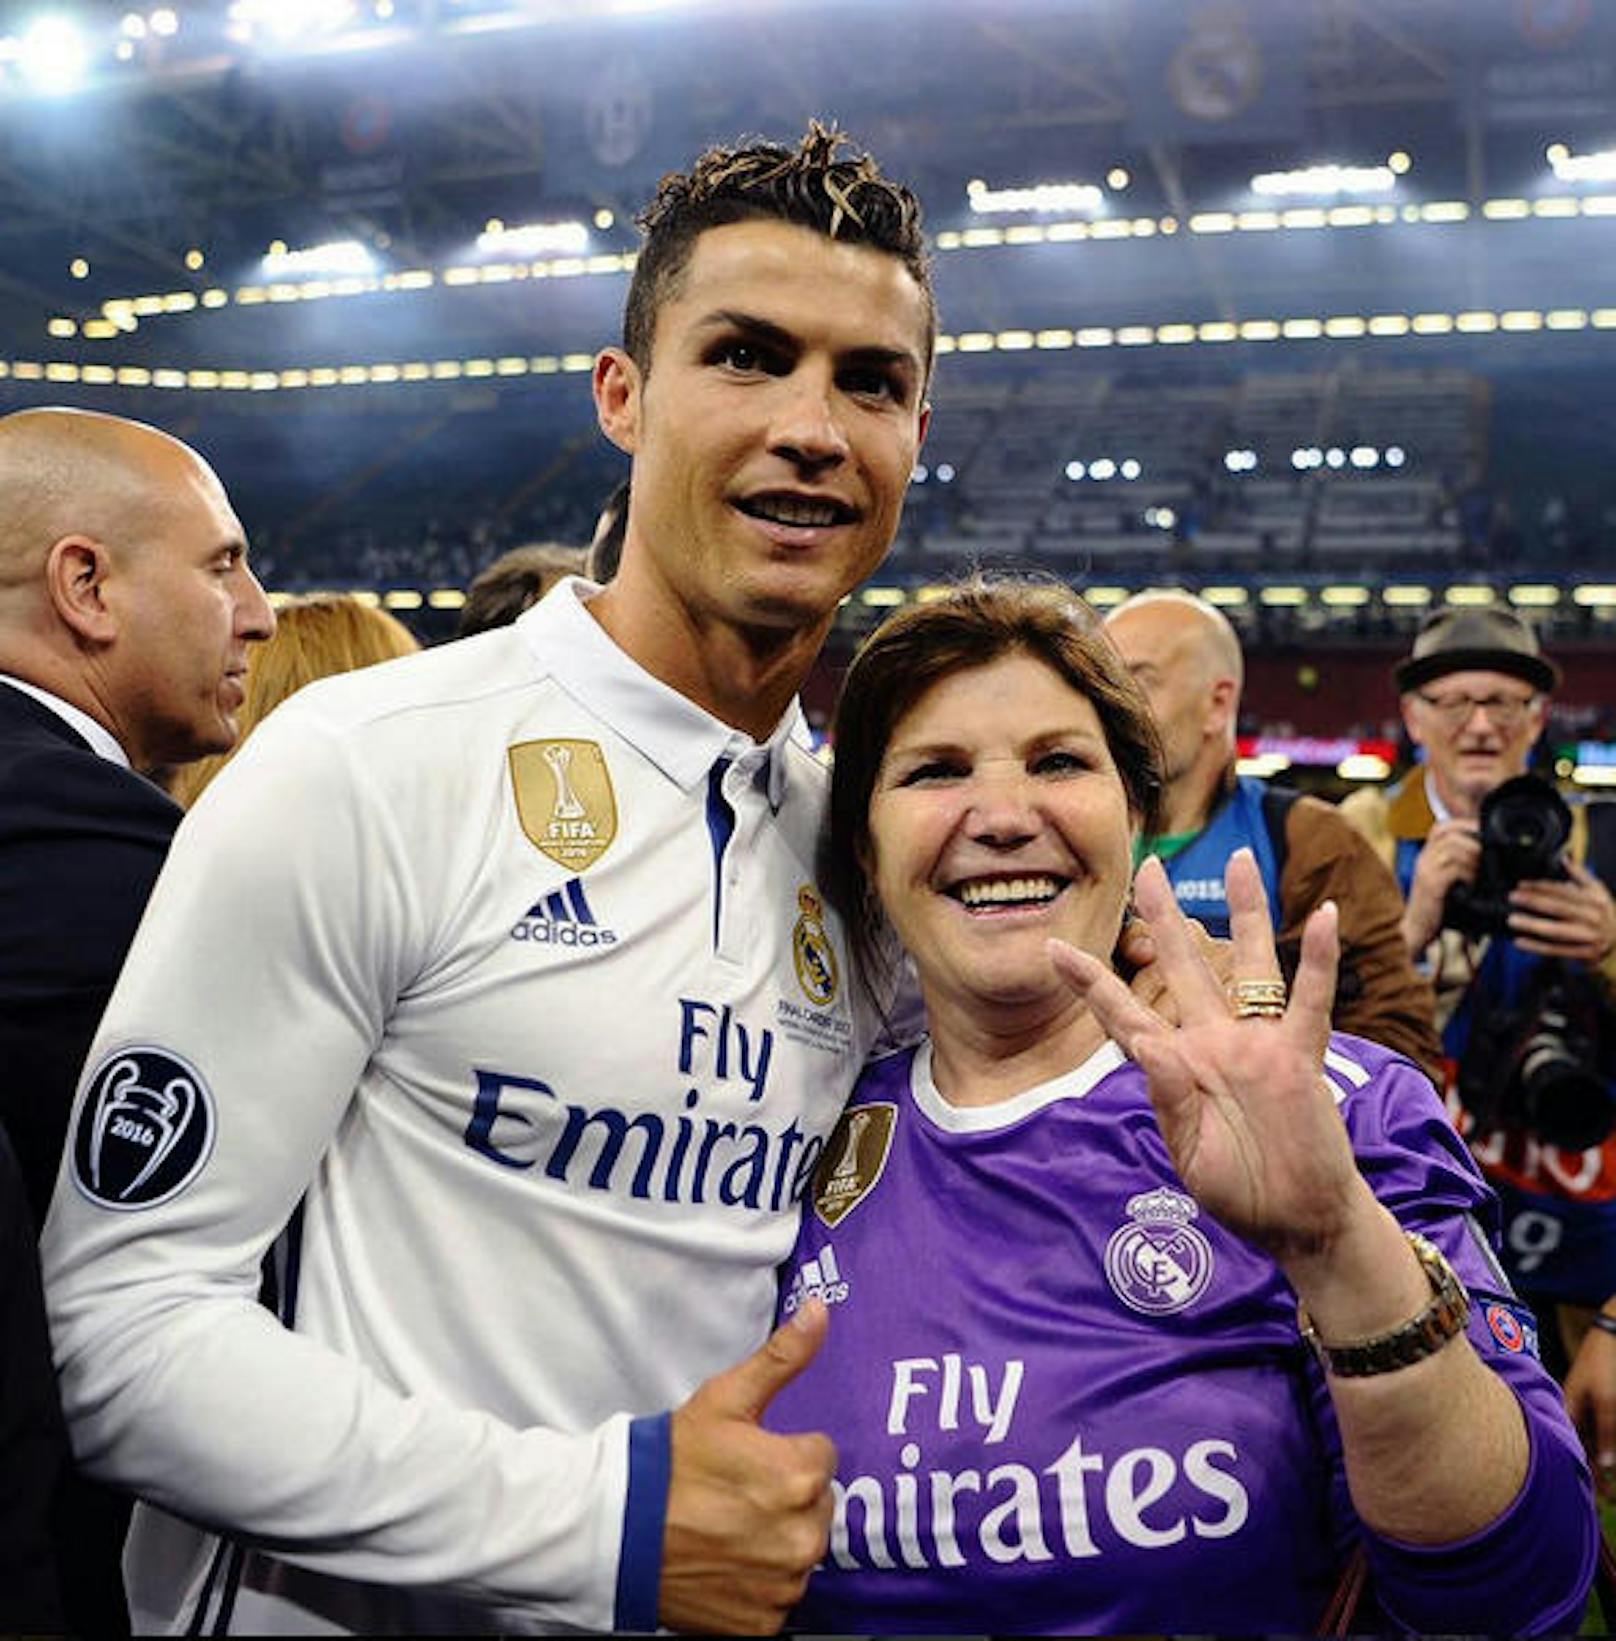 Auch Mama Maria kam nach Cardiff und legte ein Ronaldo-Trikot an.